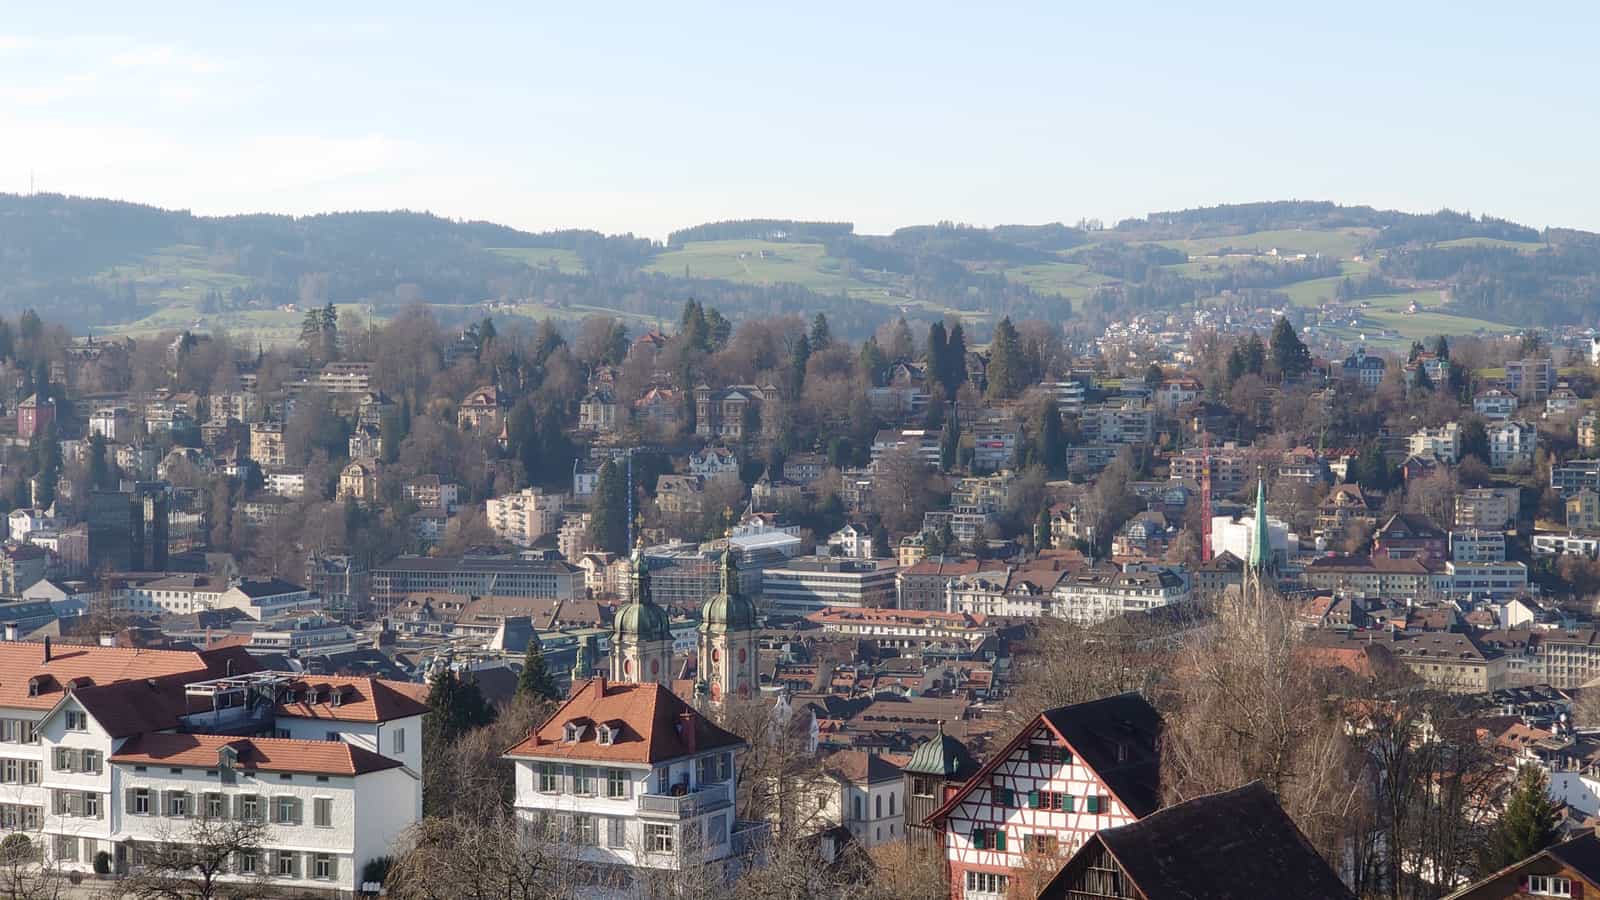 St. Gallen Altstadt Rosenberg